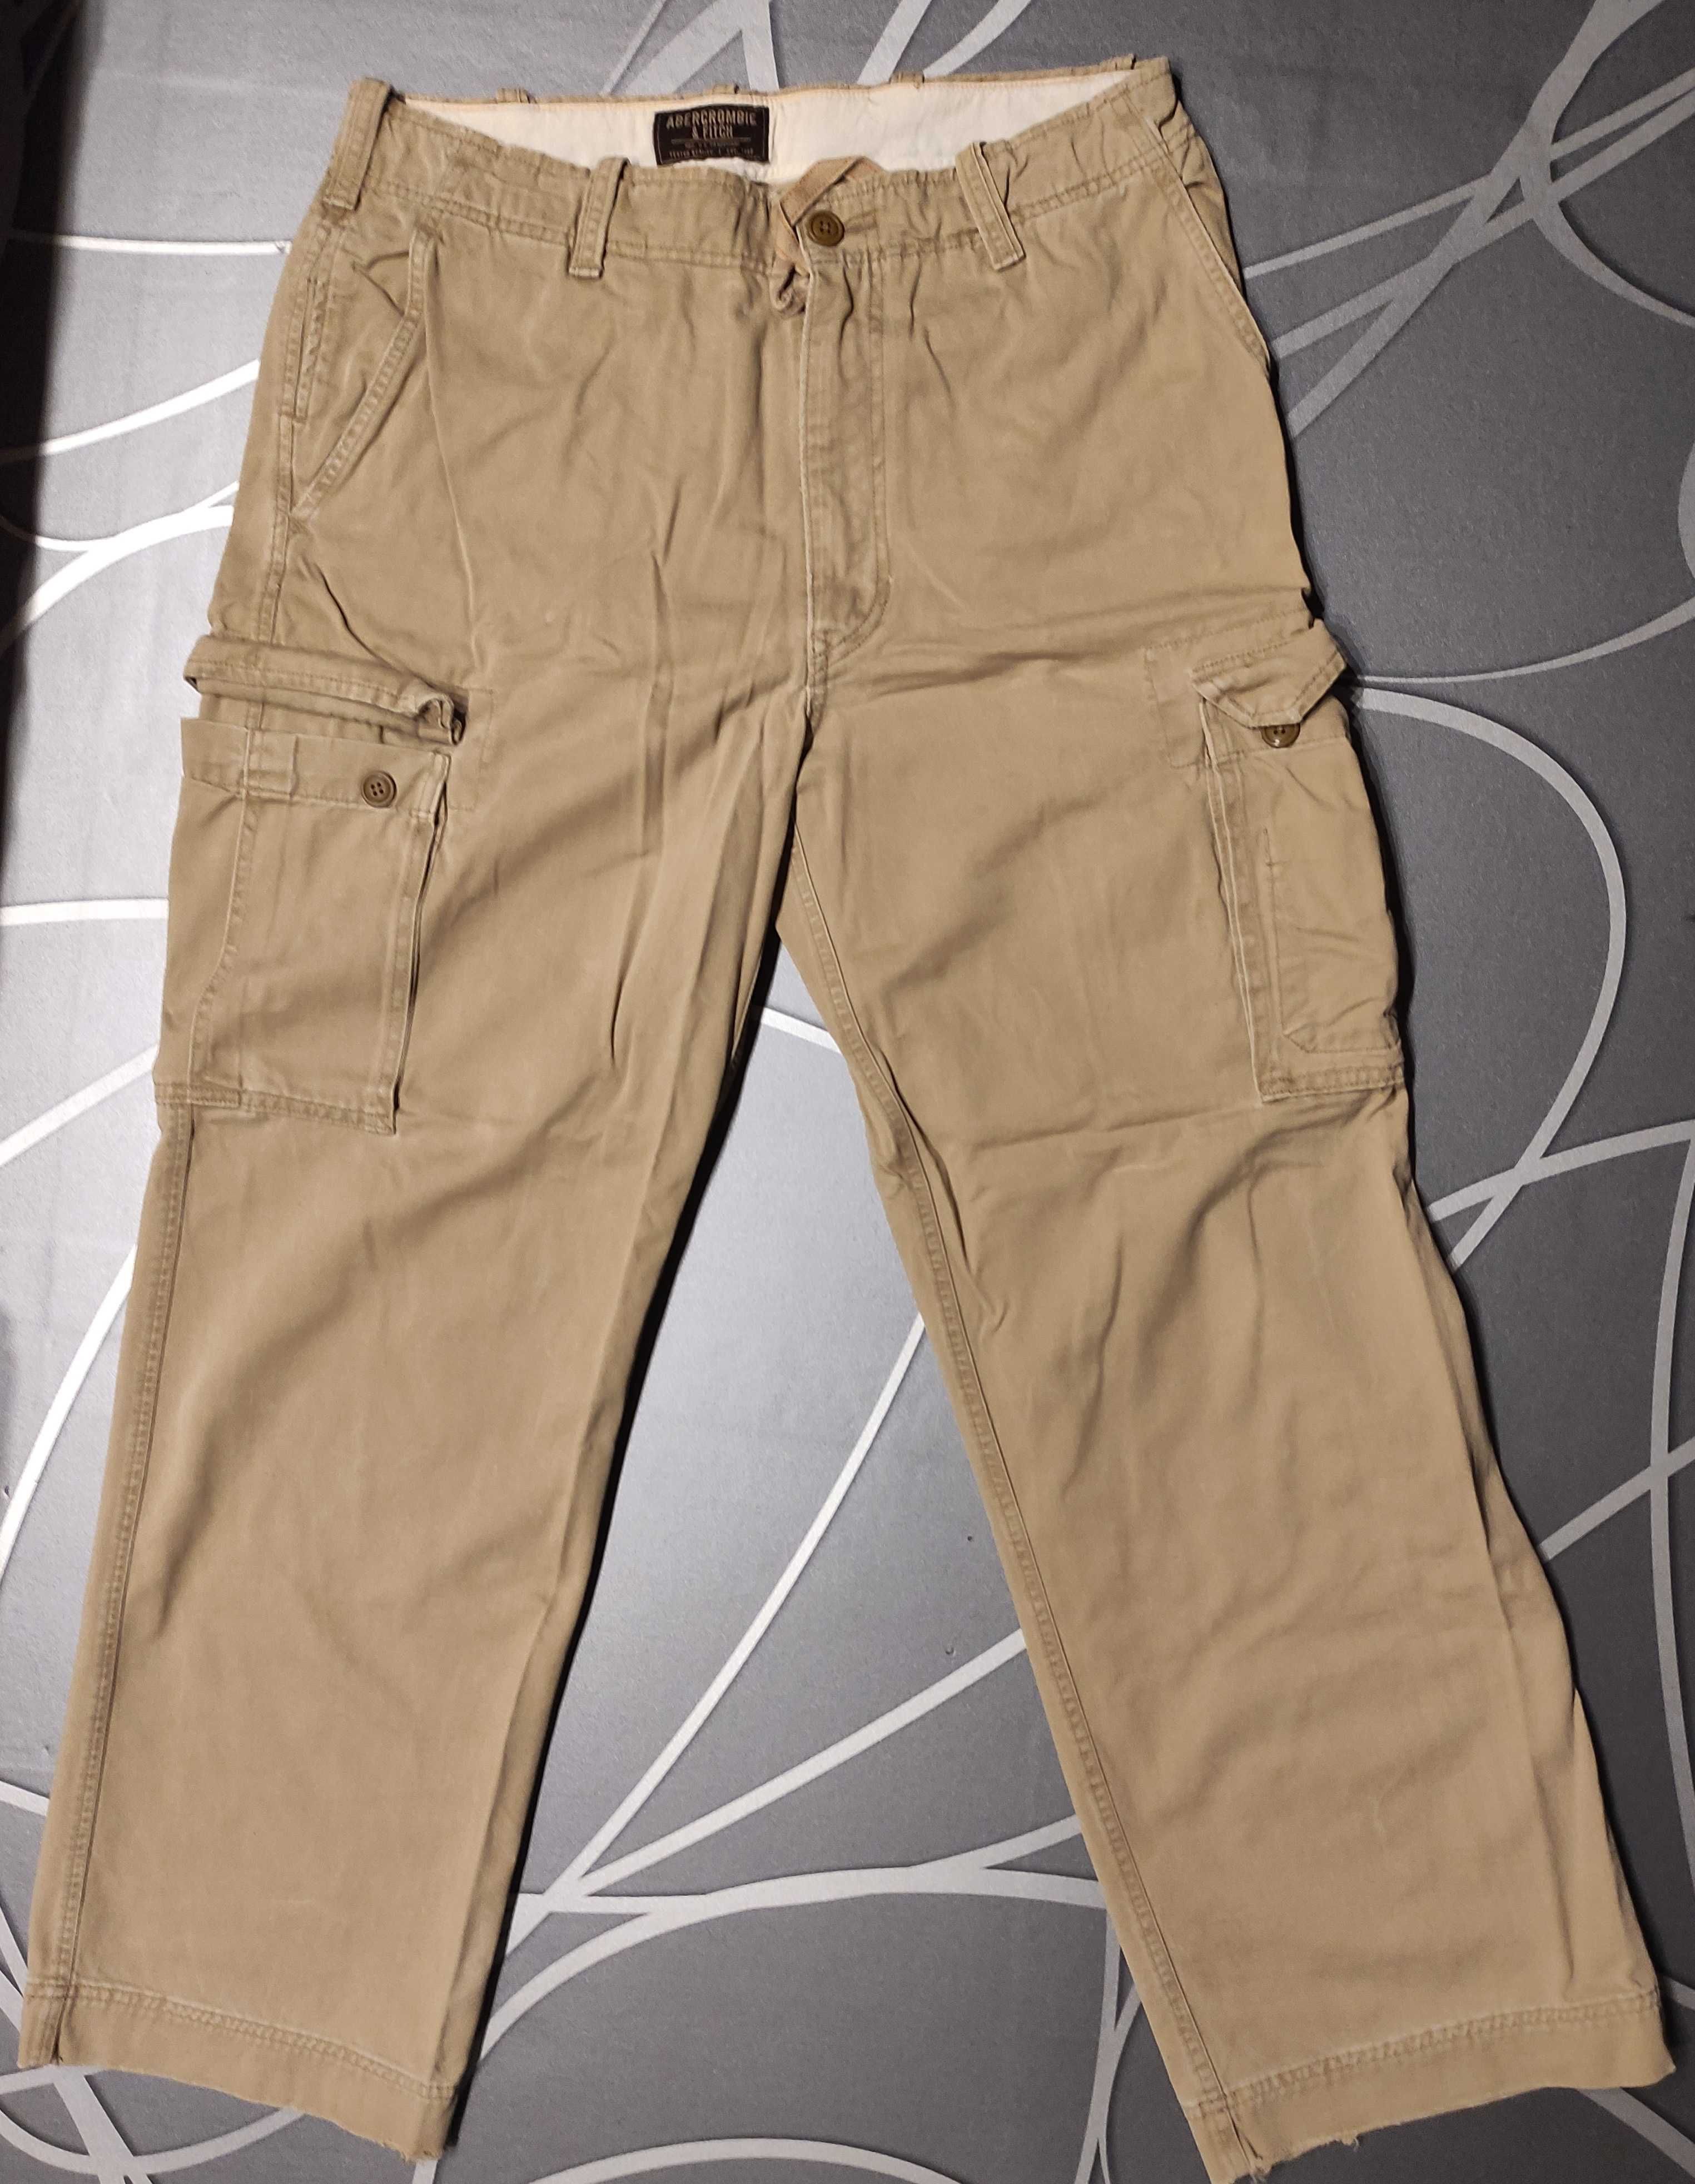 Spodnie męskie Abercrombie & Fitch 34R bojówki